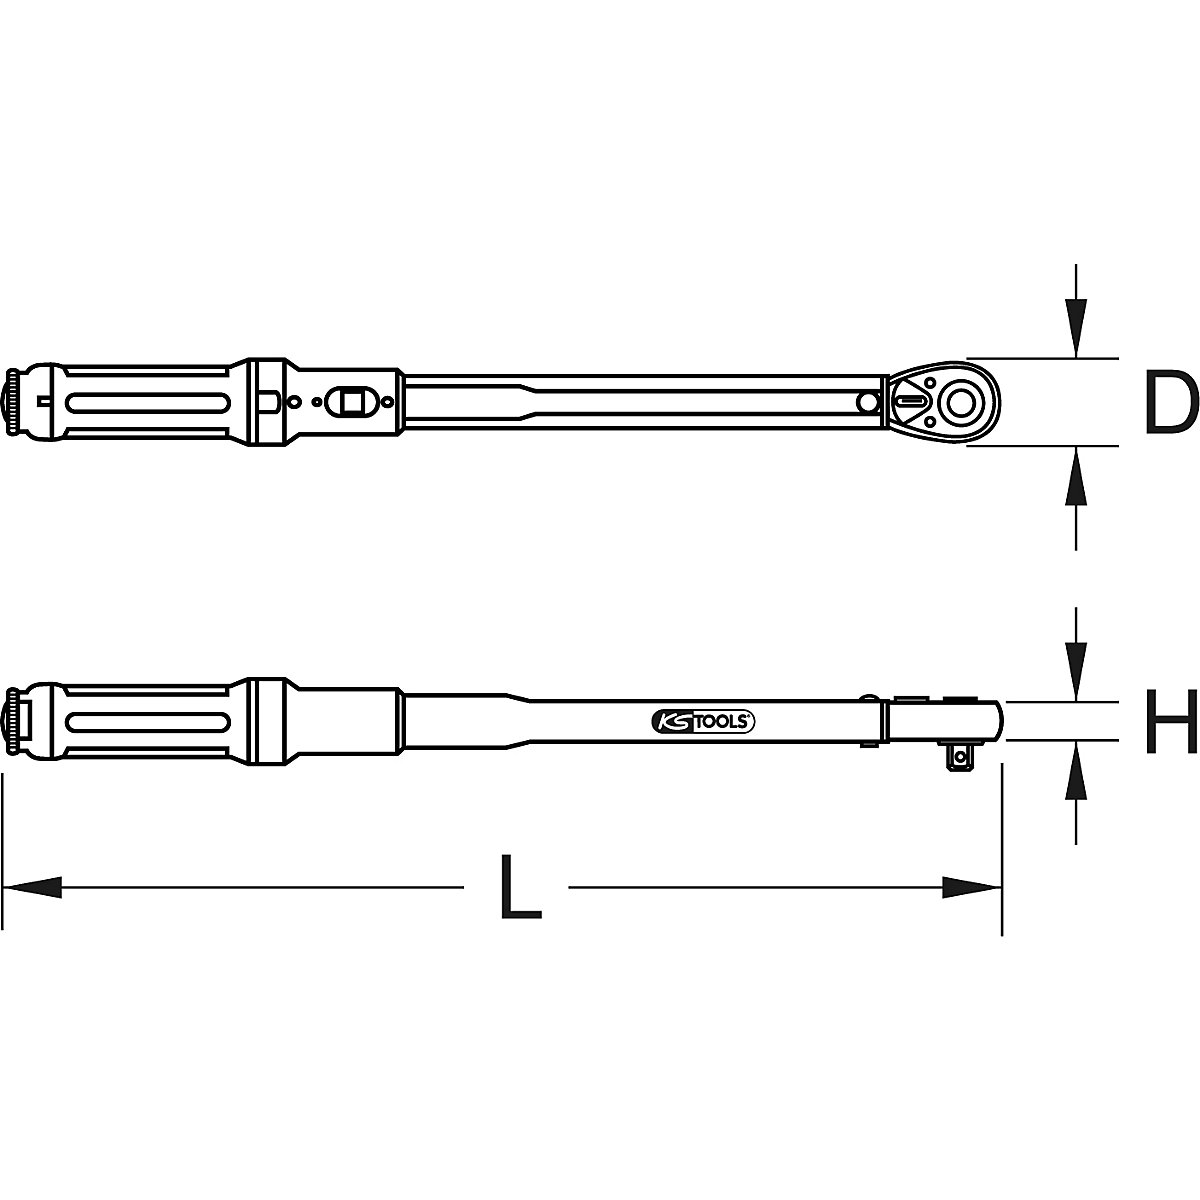 Chiave dinamometrica ERGOTORQUE®precision con testa a cricco reversibile – KS Tools (Foto prodotto 6)-5